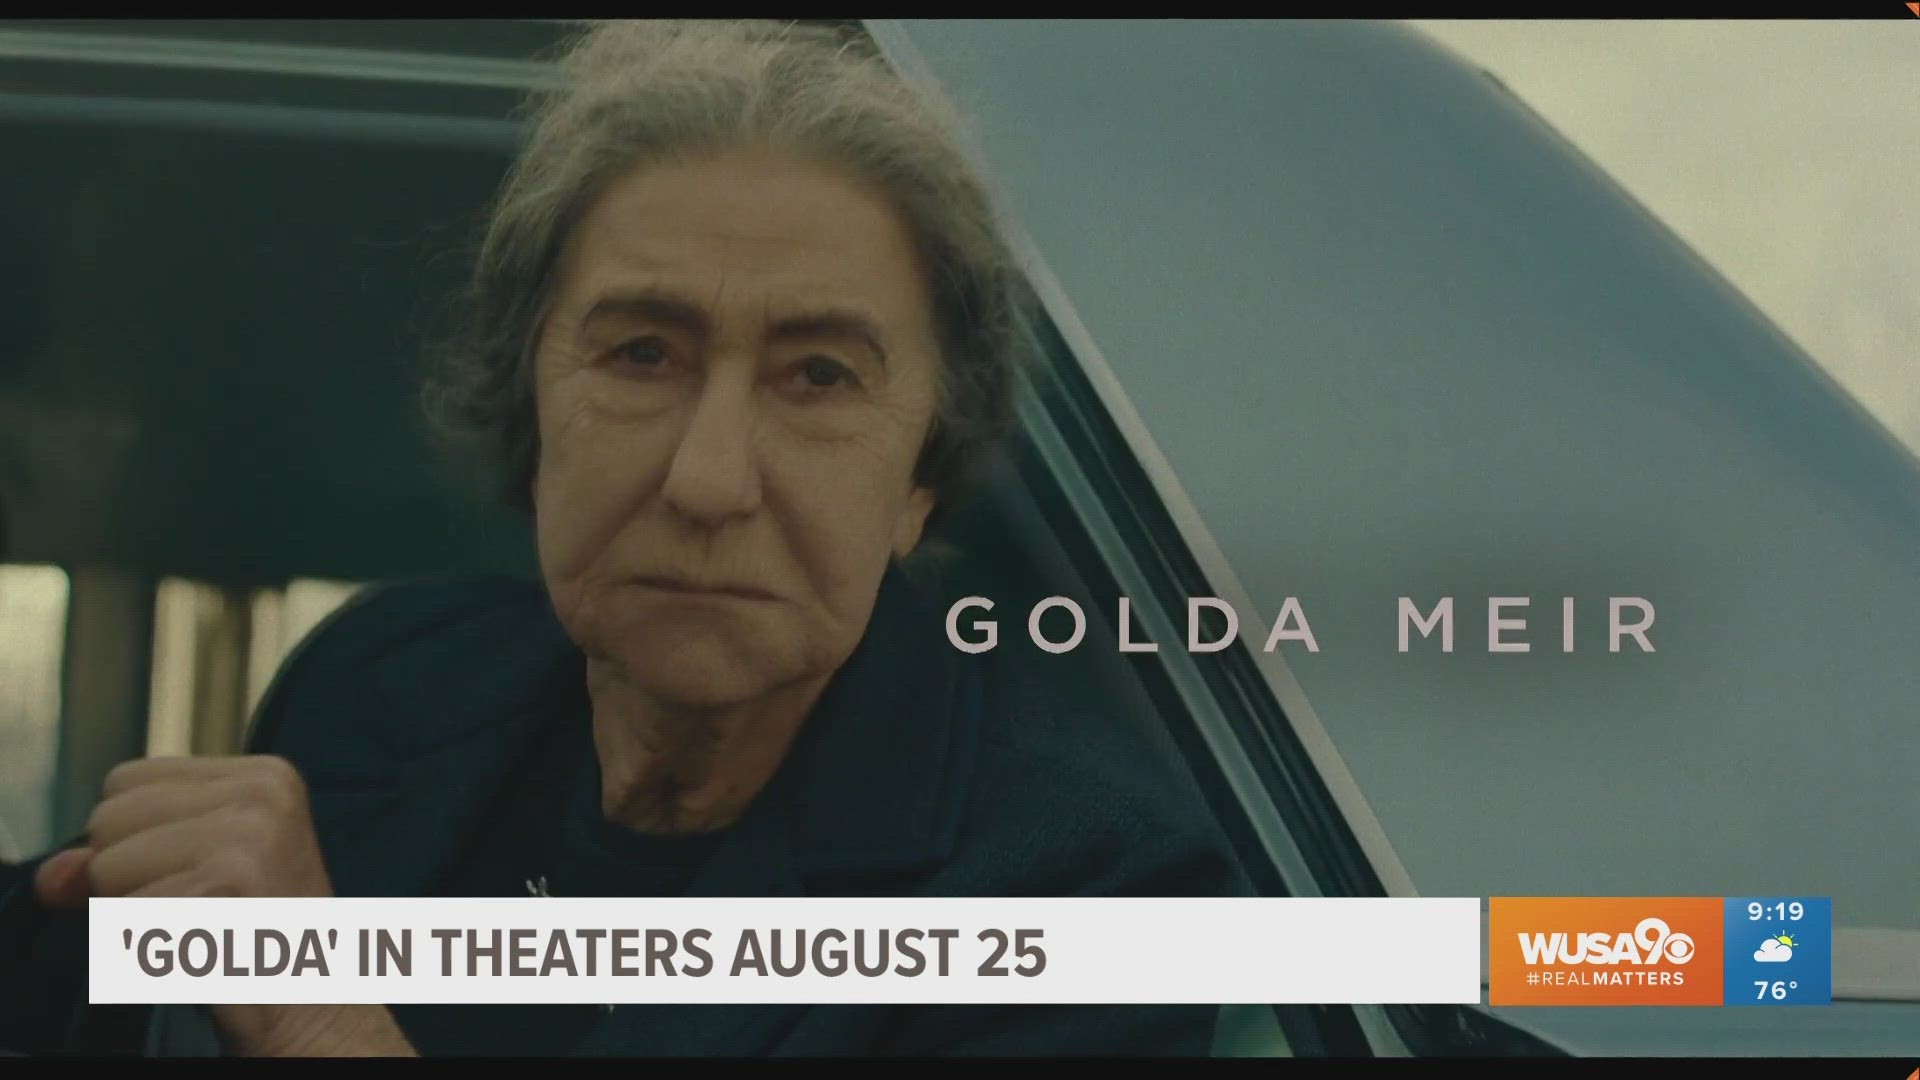 Director Guy Nattiv discusses his new film 'Golda